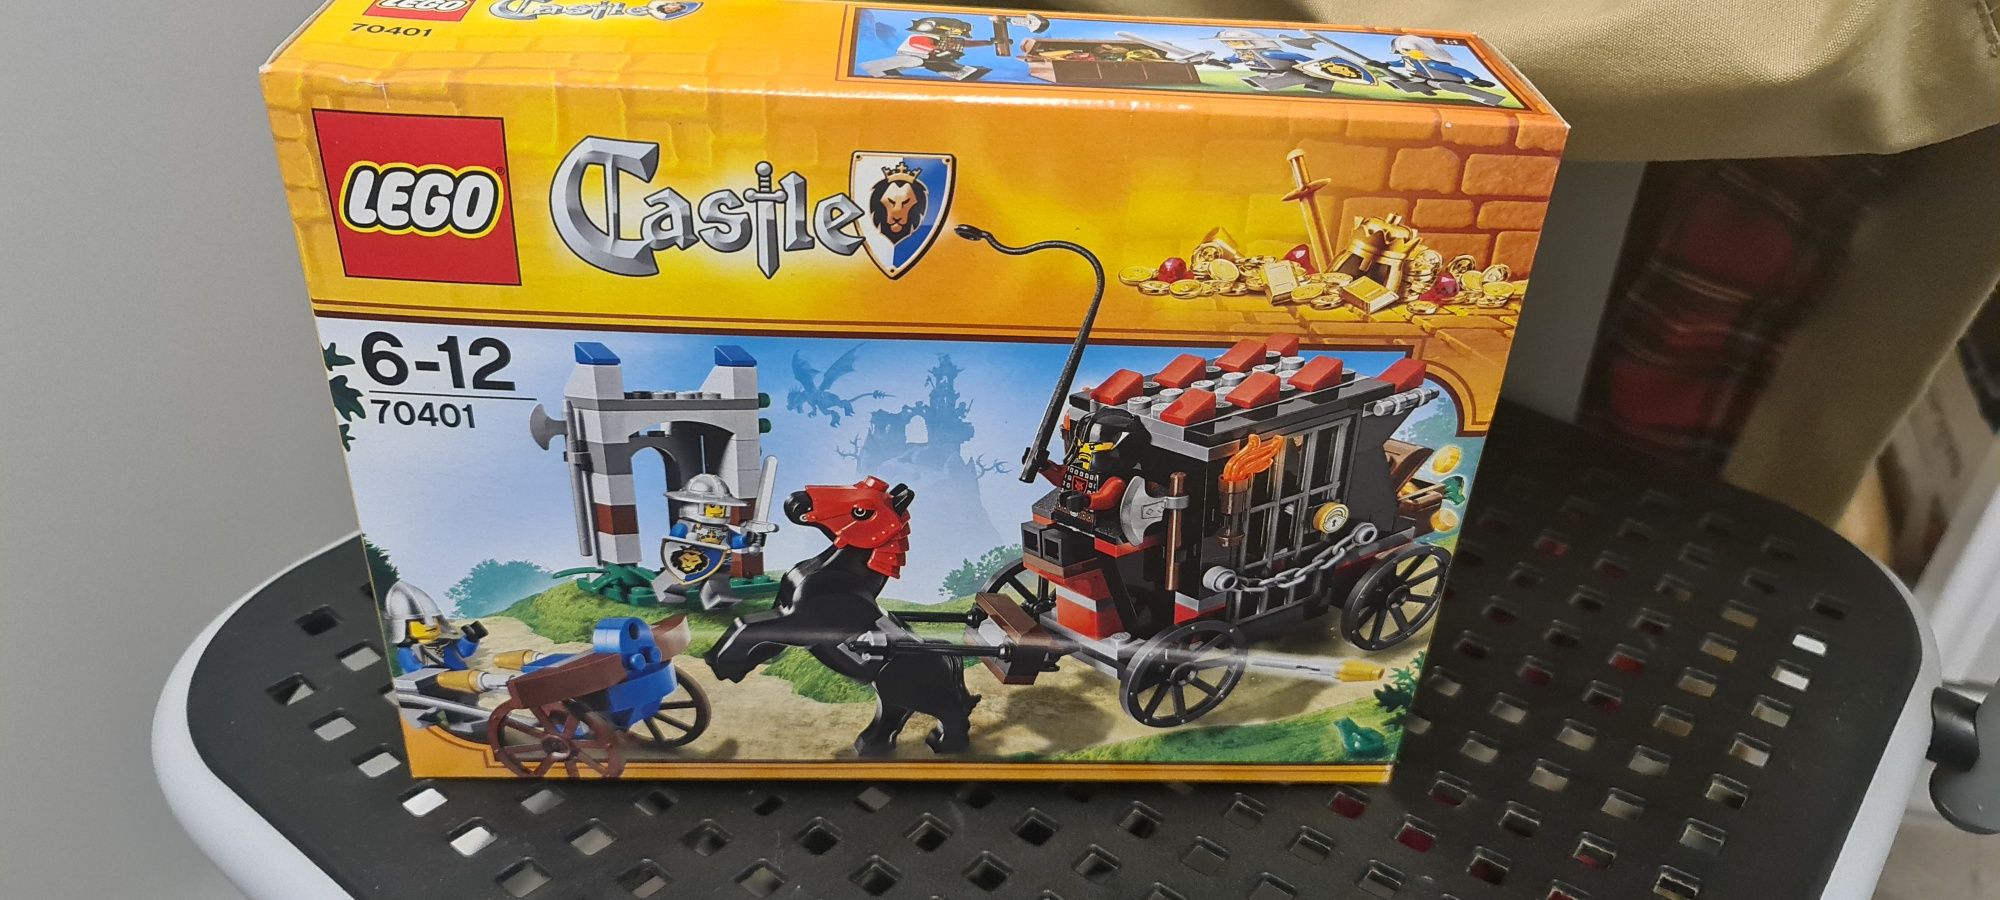 Lego castle set 70401